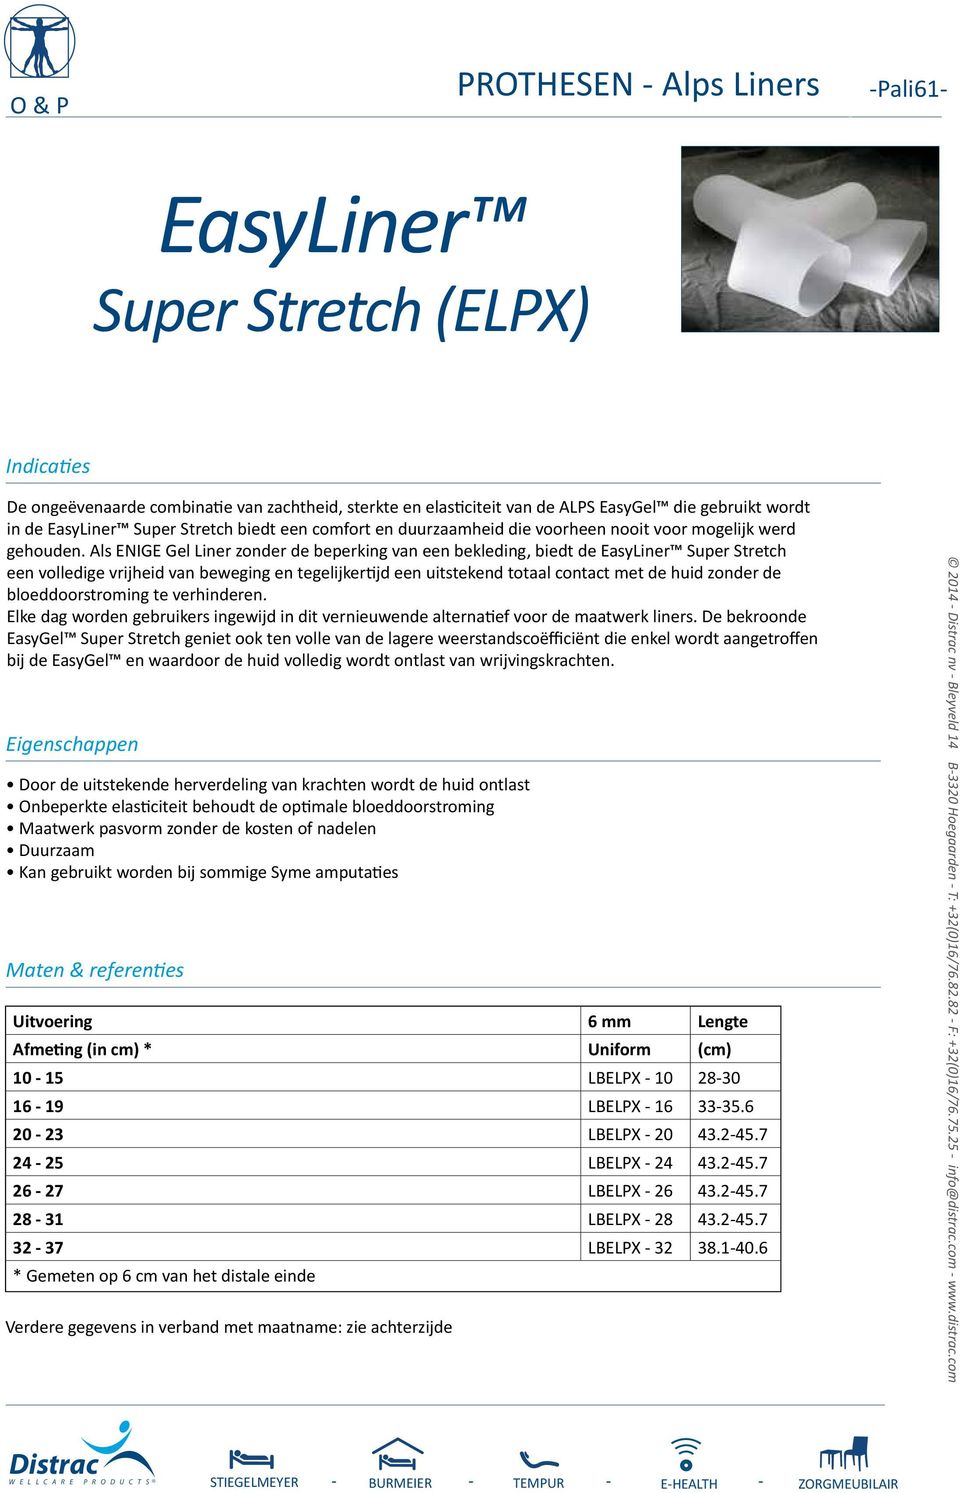 Als ENIGE Gel Liner zonder de beperking van een bekleding, biedt de EasyLiner Super Stretch een volledige vrijheid van beweging en tegelijkertijd een uitstekend totaal contact met de huid zonder de